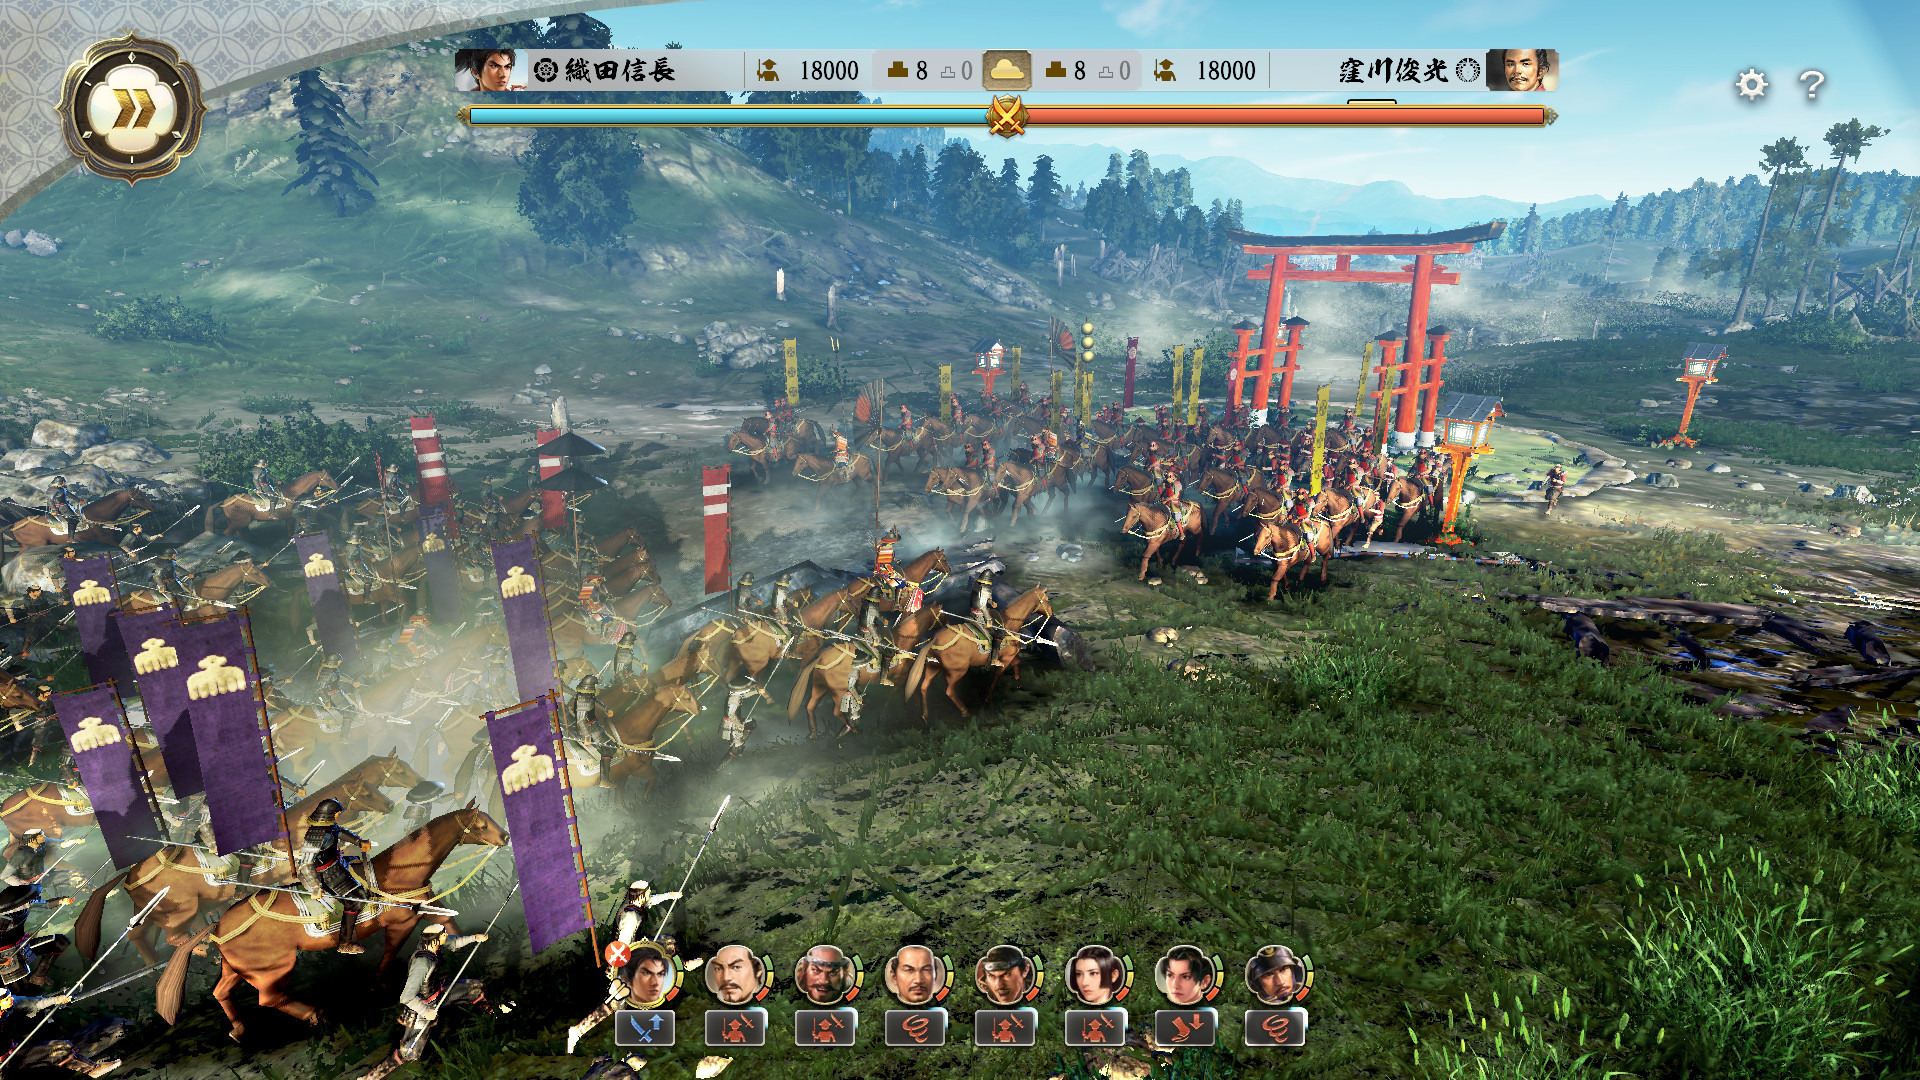 Nobunaga s ambition awakening. Nobunaga's Ambition геймплей. Игра амбиции Нобунага. Игра "Nobunaga's Ambition: Awakening" Постер.